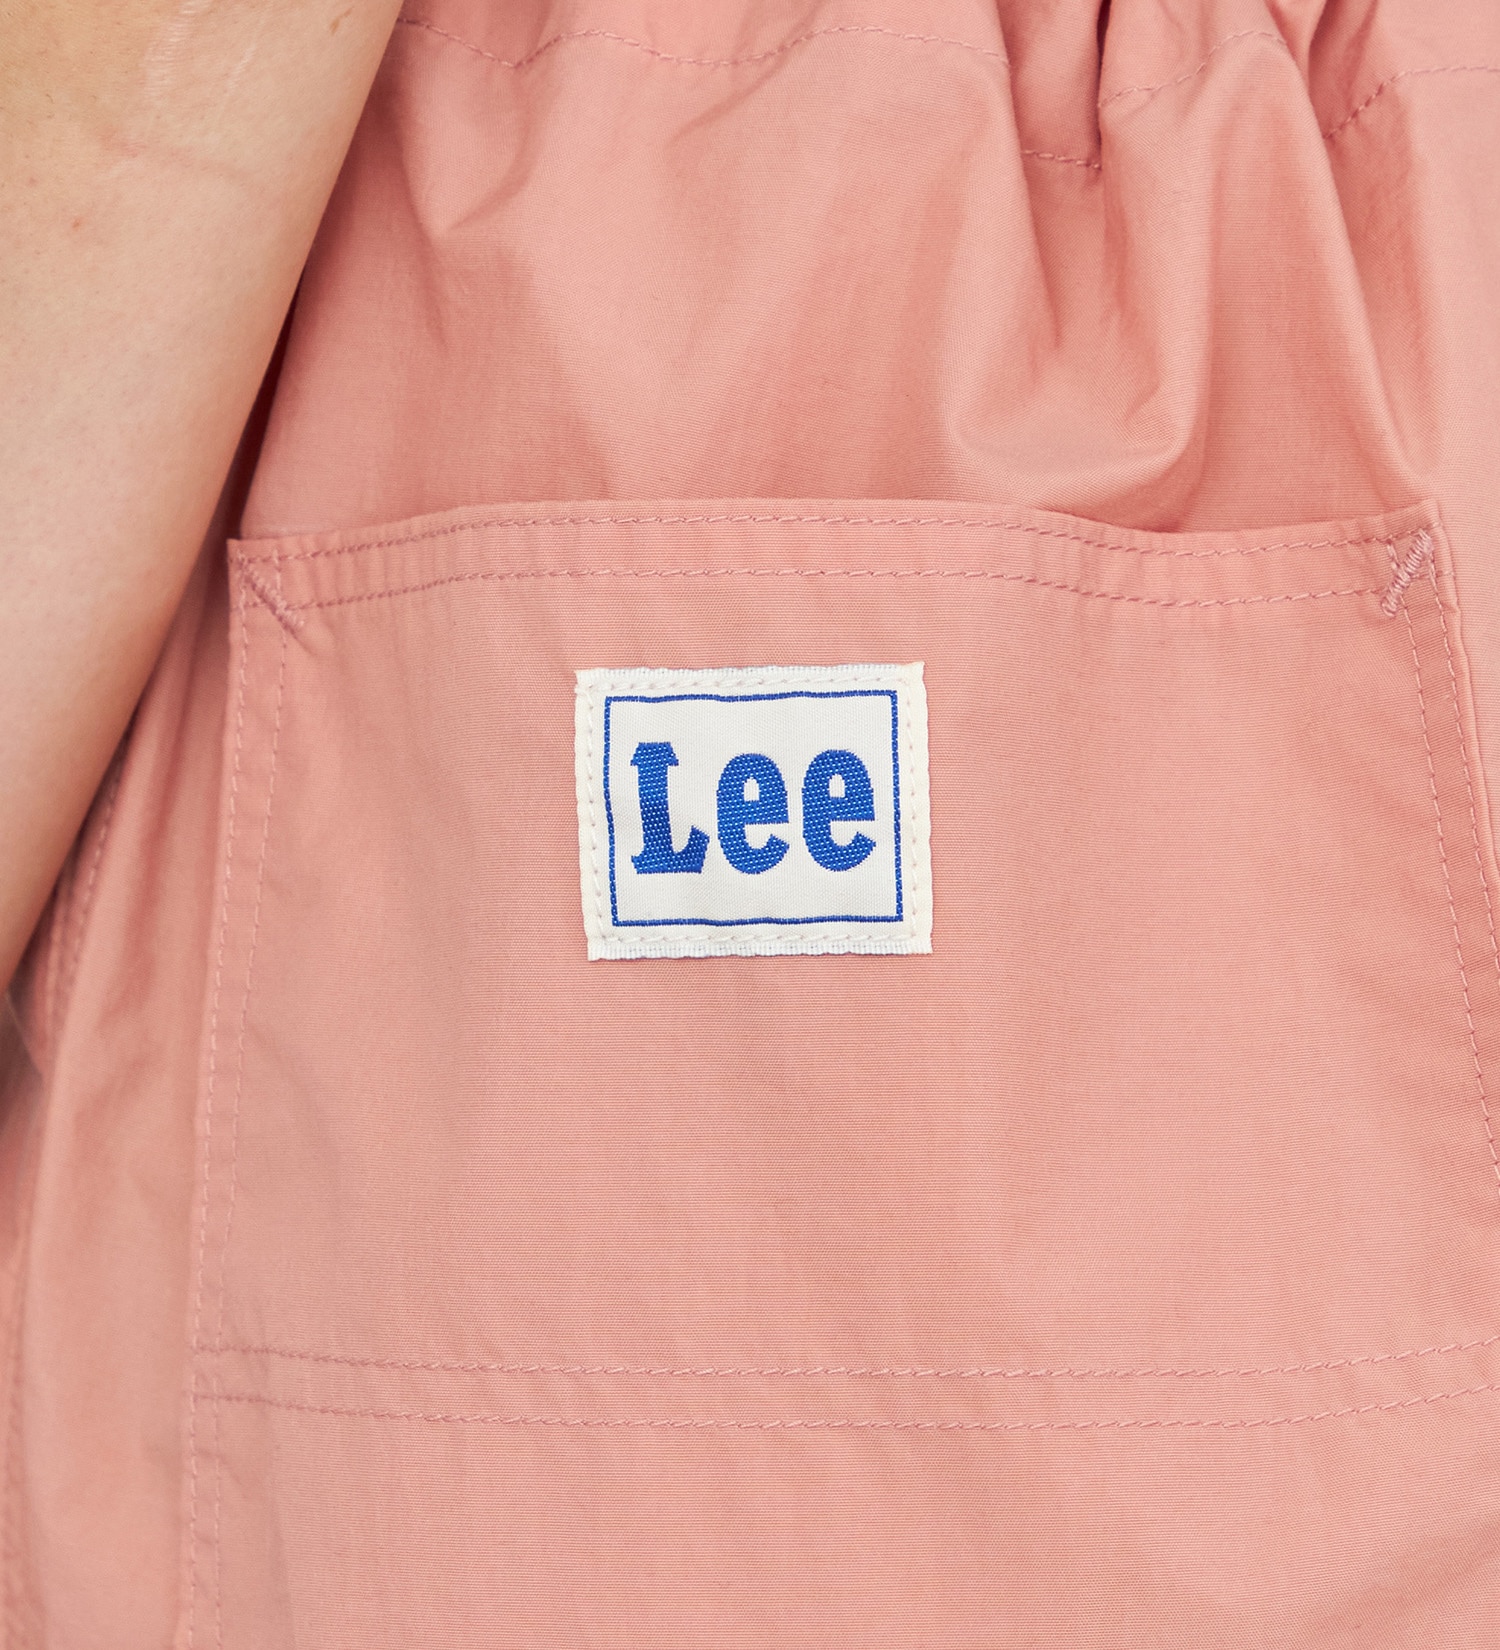 Lee(リー)の【SALE】【リニューアル】パラシュートイージーパンツ|パンツ/パンツ/レディース|ピンク